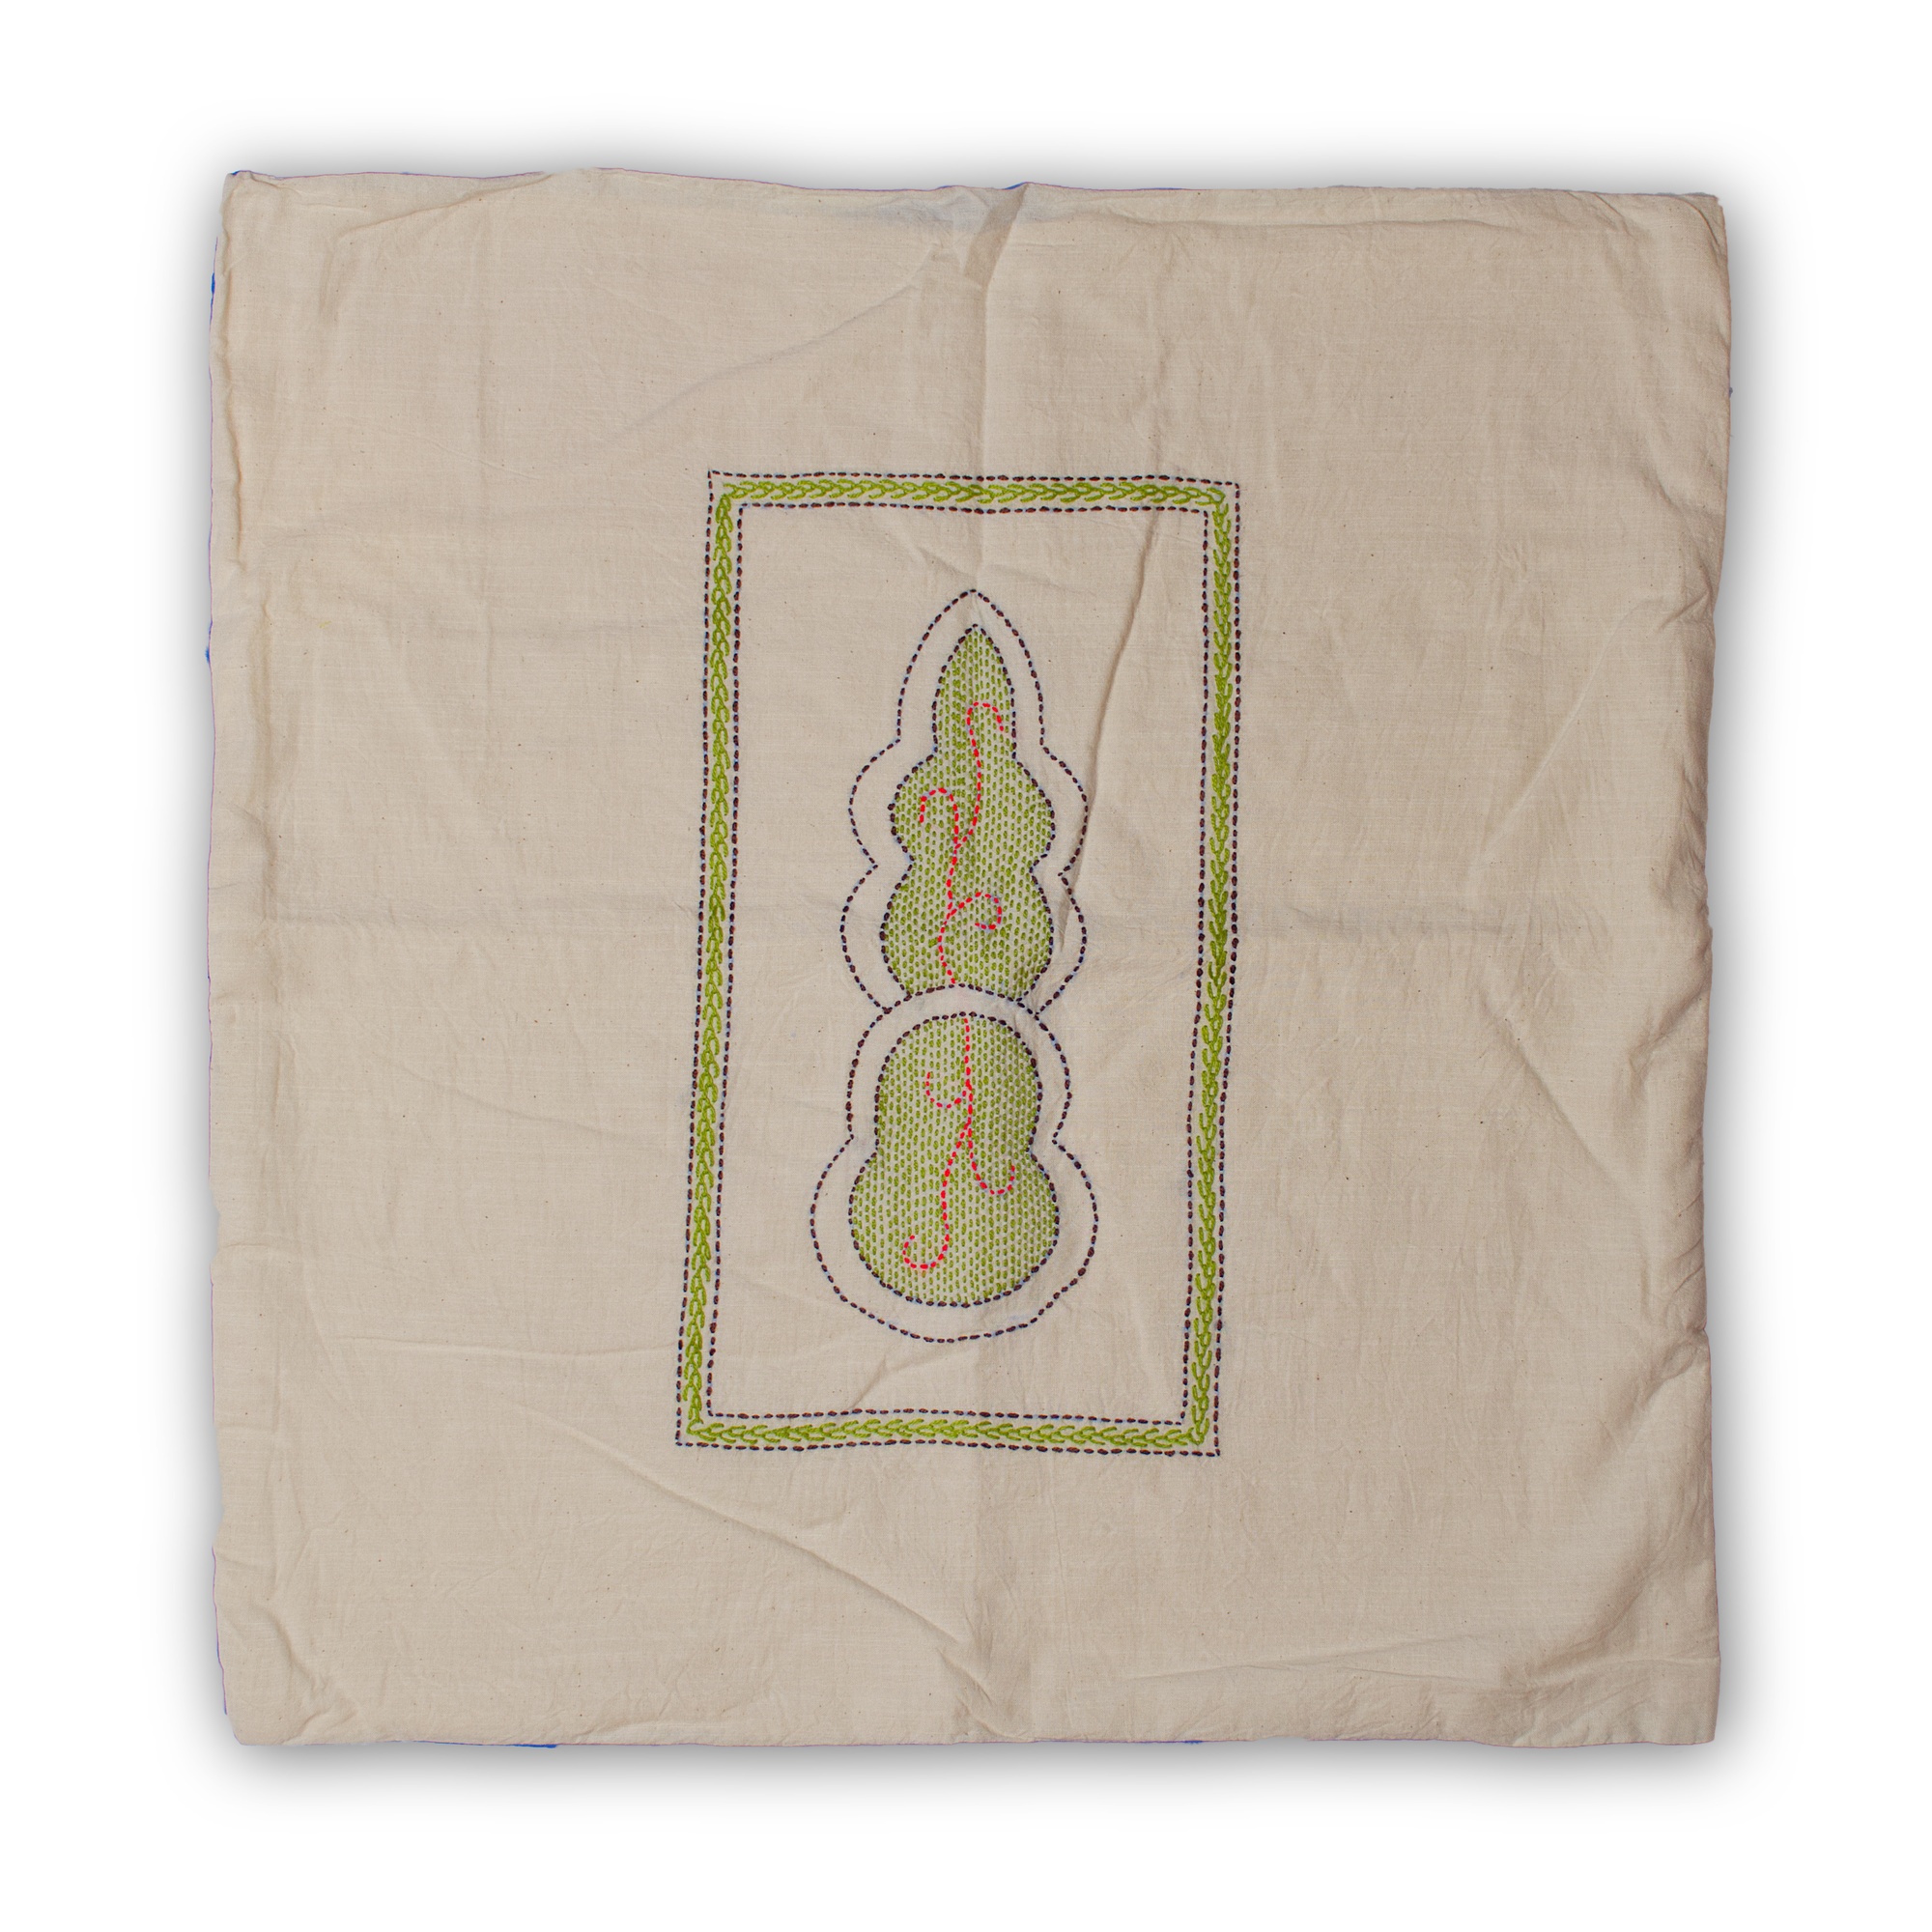 Cushion Covers - Gaibandha (leaf) Design - Asfara (White)